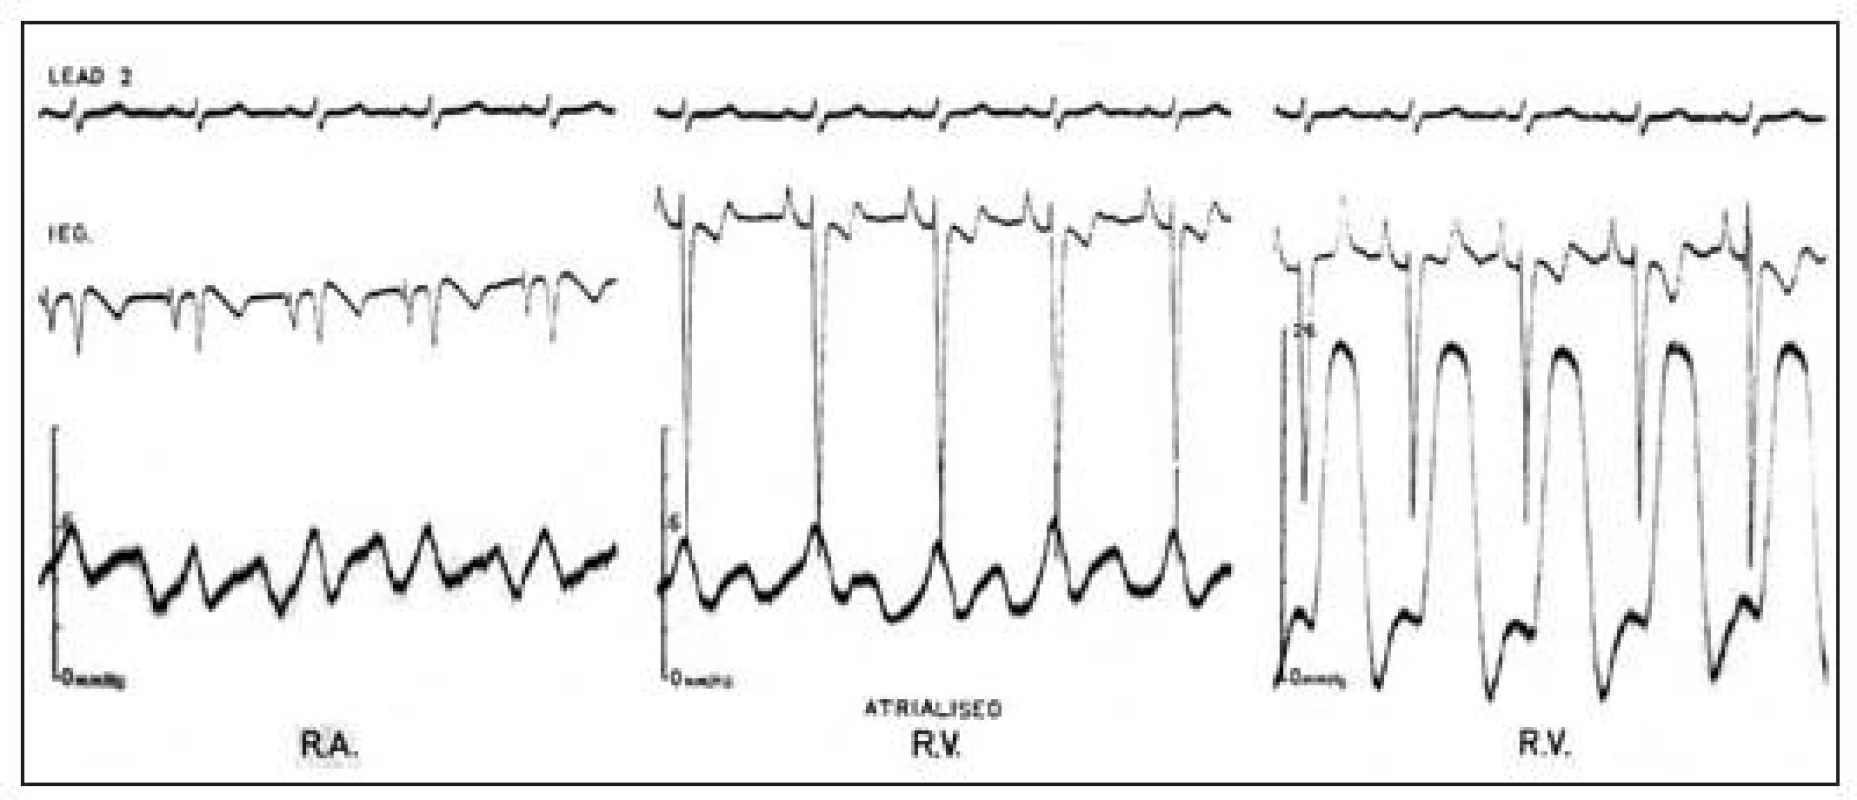 Záznamy u Ebsteinovy anomálie během srdeční katetrizace s elektrodou na katétru. V „atrializované“ části pravé komory se zaznamená současně se síňovým tlakovým pulzem komorový
intrakardiální elektrokardiogram (prostřední obrázek).